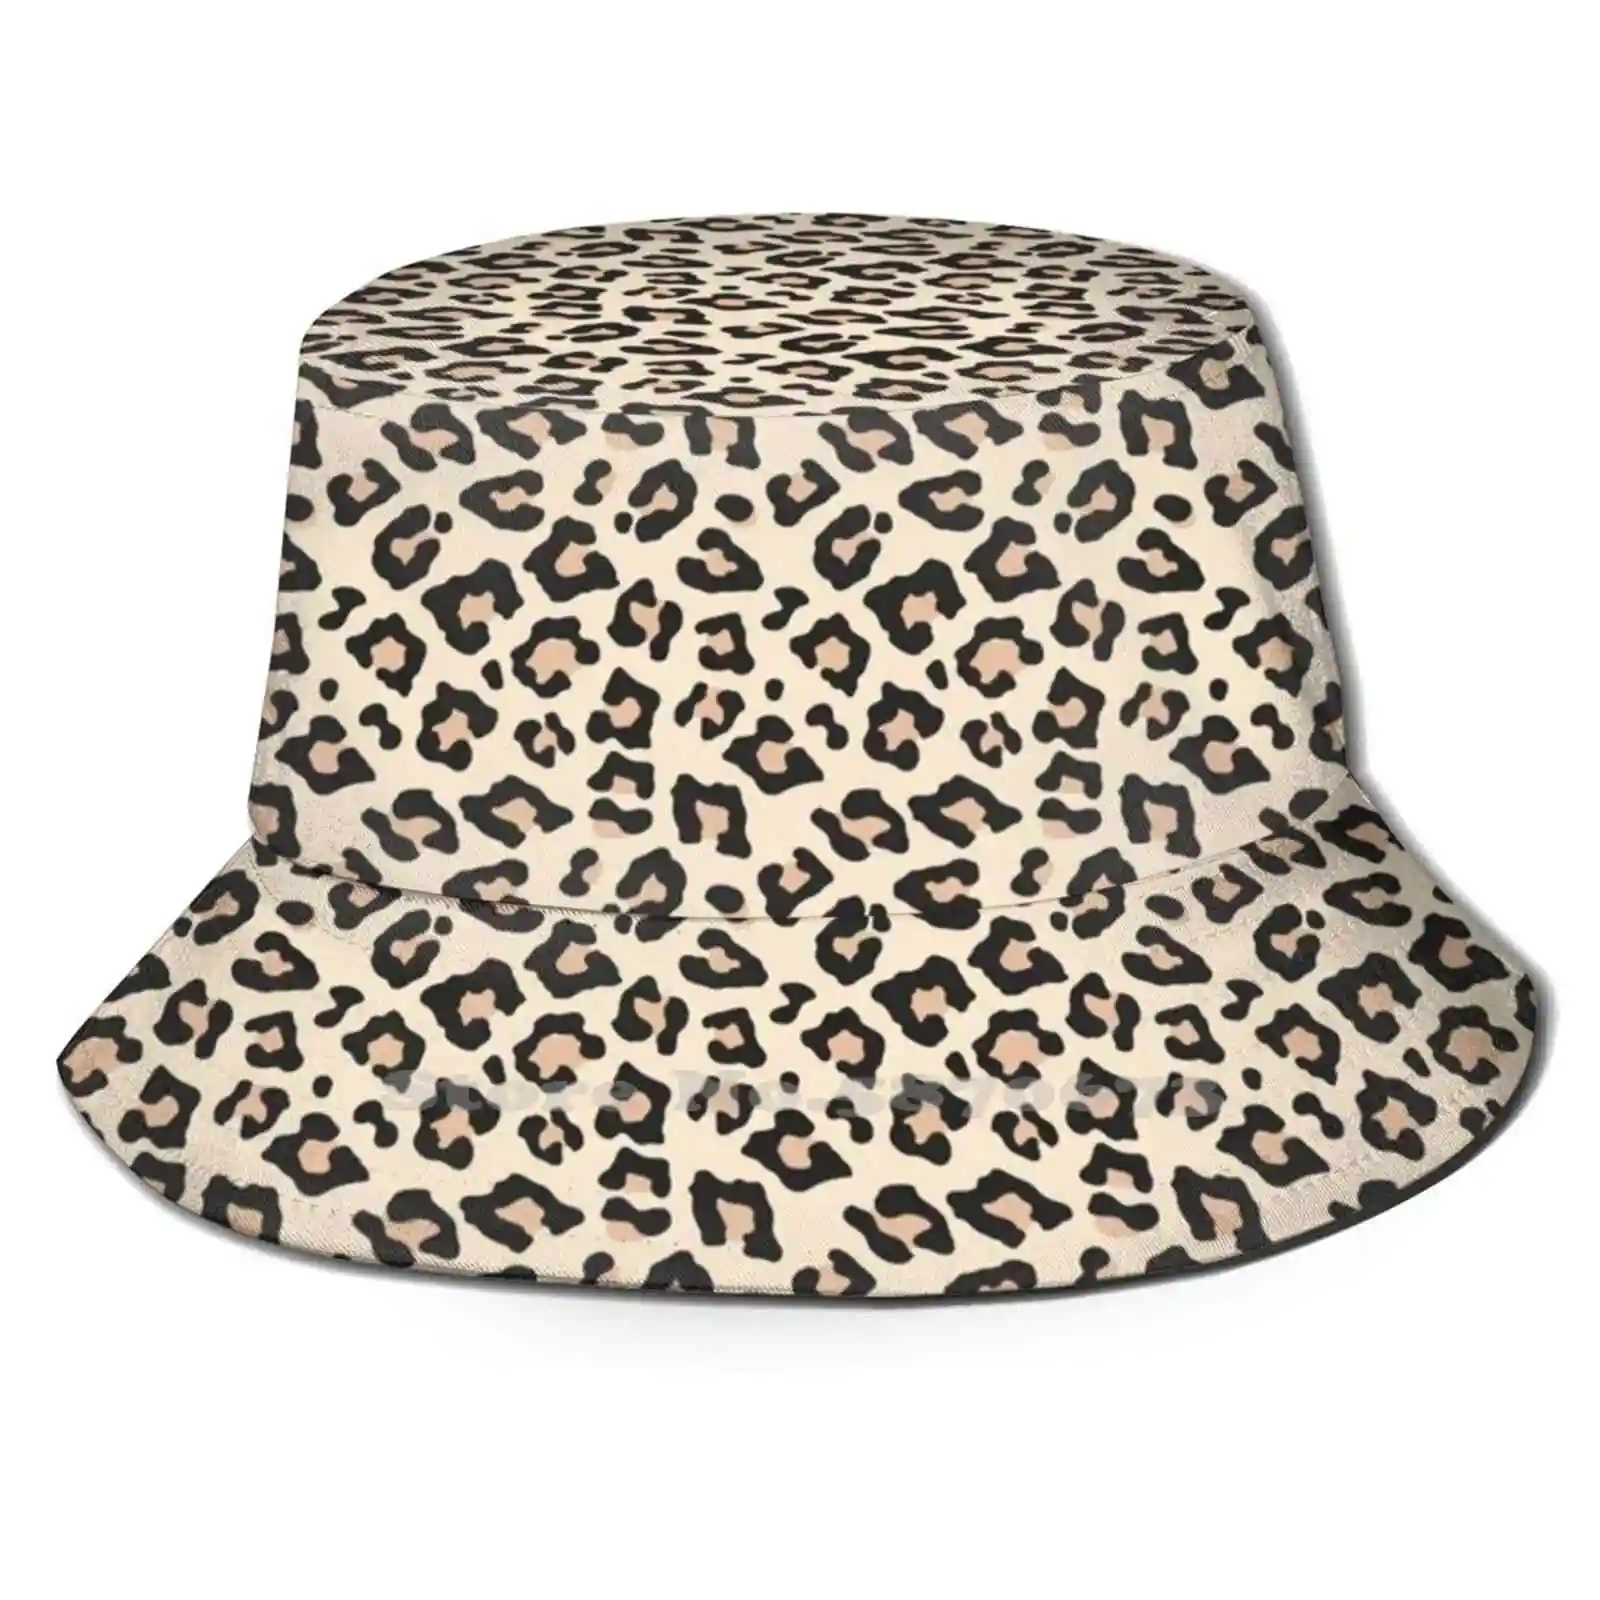 

Уличная шляпа с леопардовым принтом, шляпа от солнца, с гепардовым гепардом, с леопардовым узором, милая коричневая эстетика Vsco